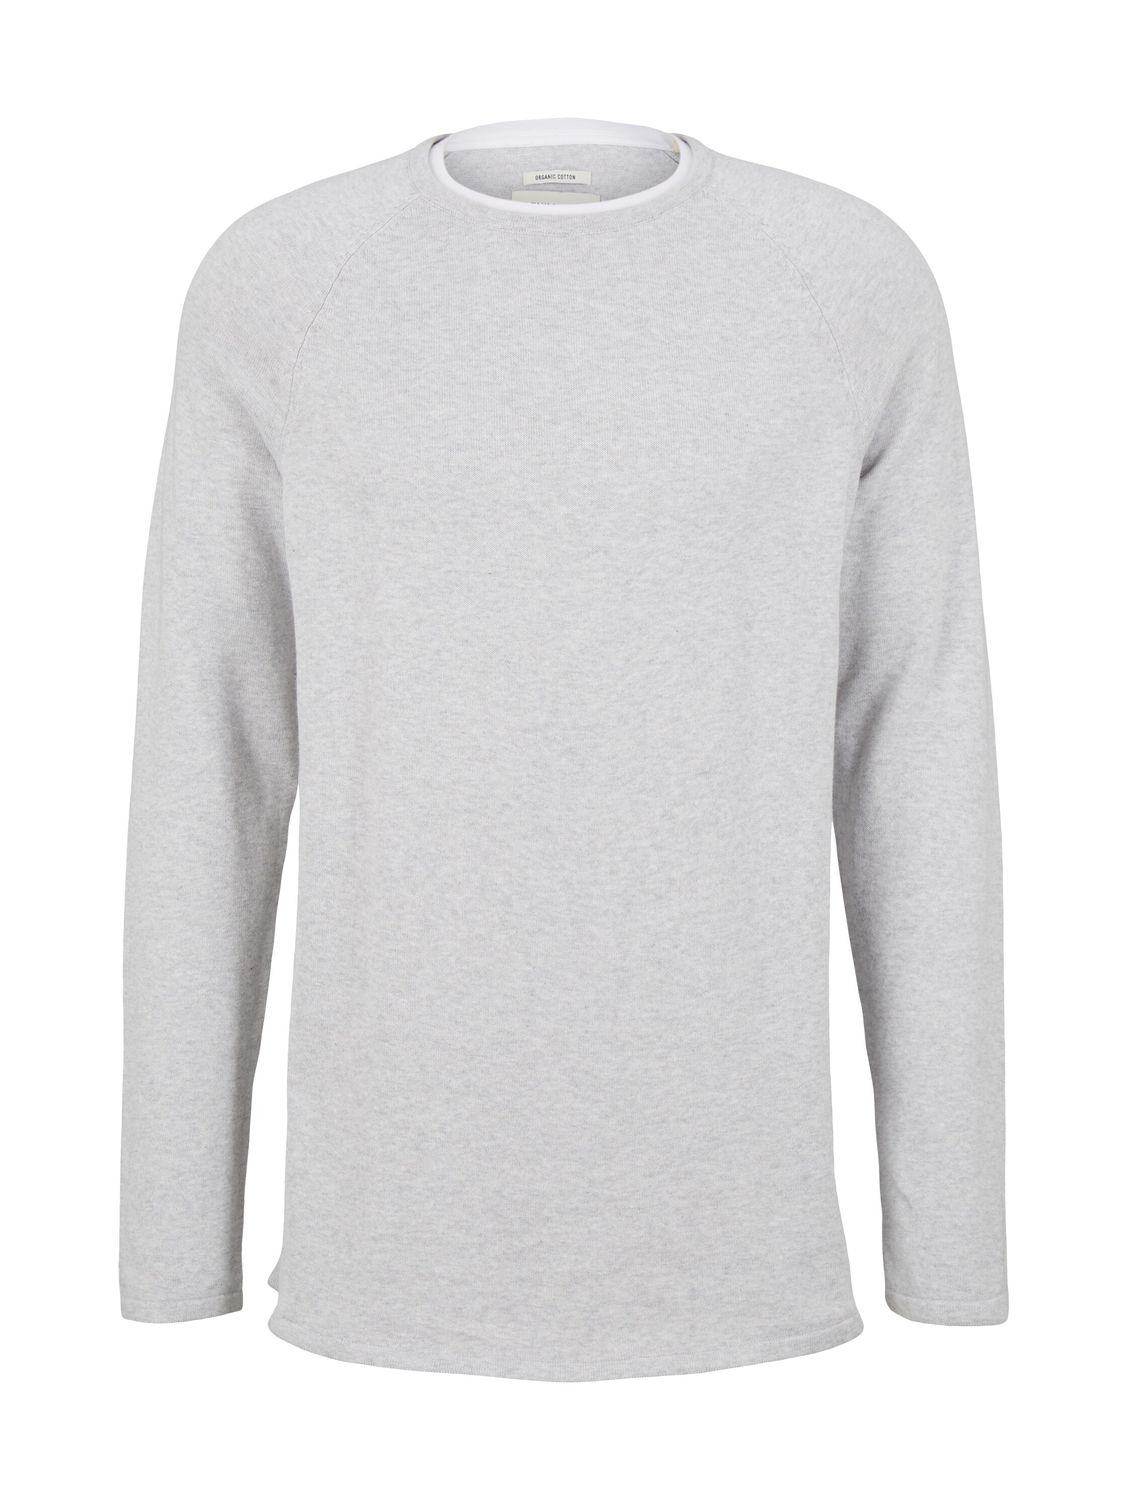 Пуловер TOM TAILOR Denim BASIC, серый футболка tom tailor размер l серый